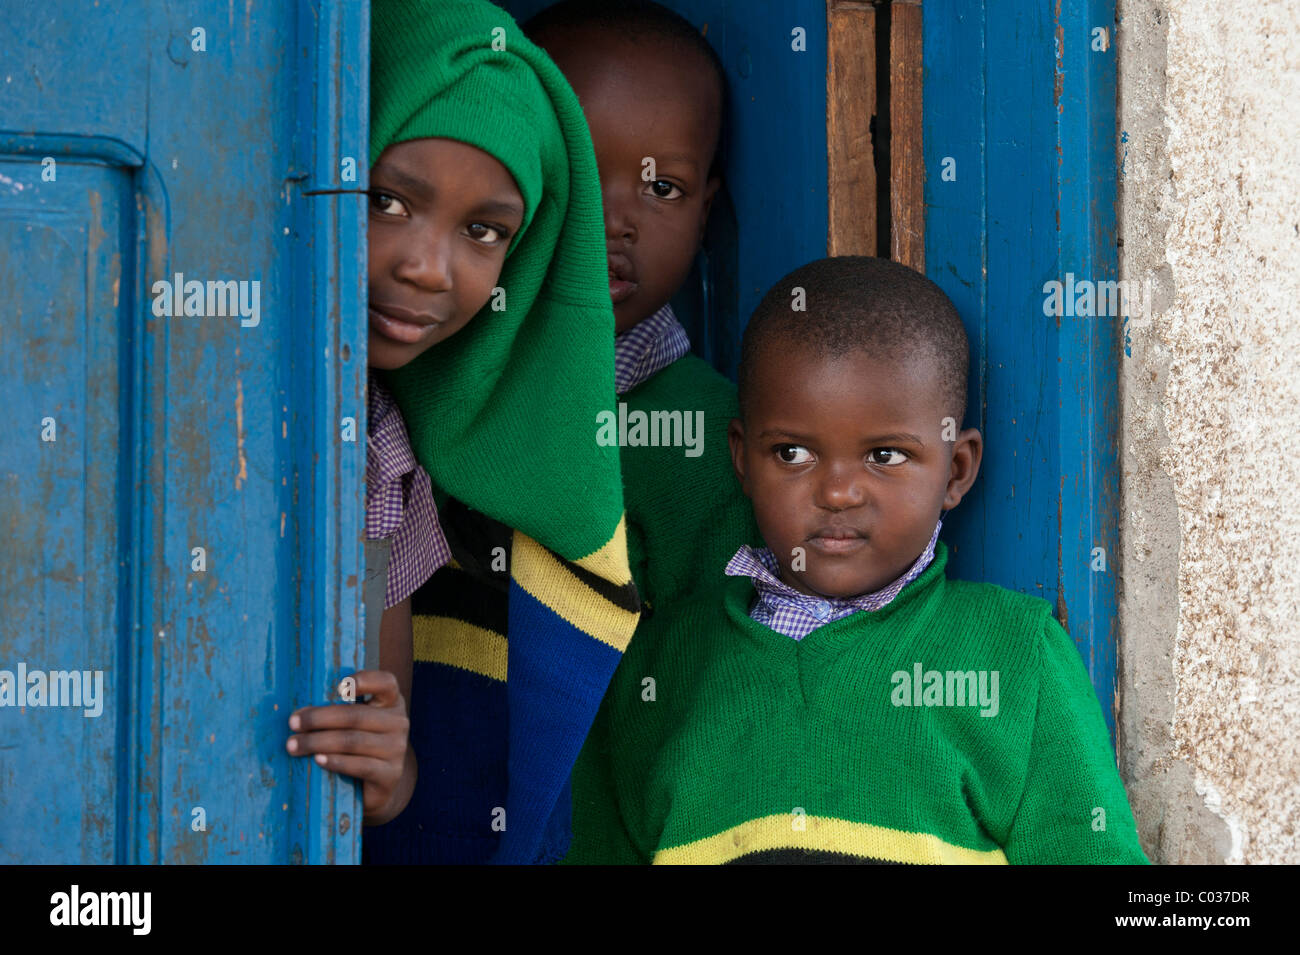 Children, 4-6 years, African children standing at a school door, Tanzania, Africa Stock Photo